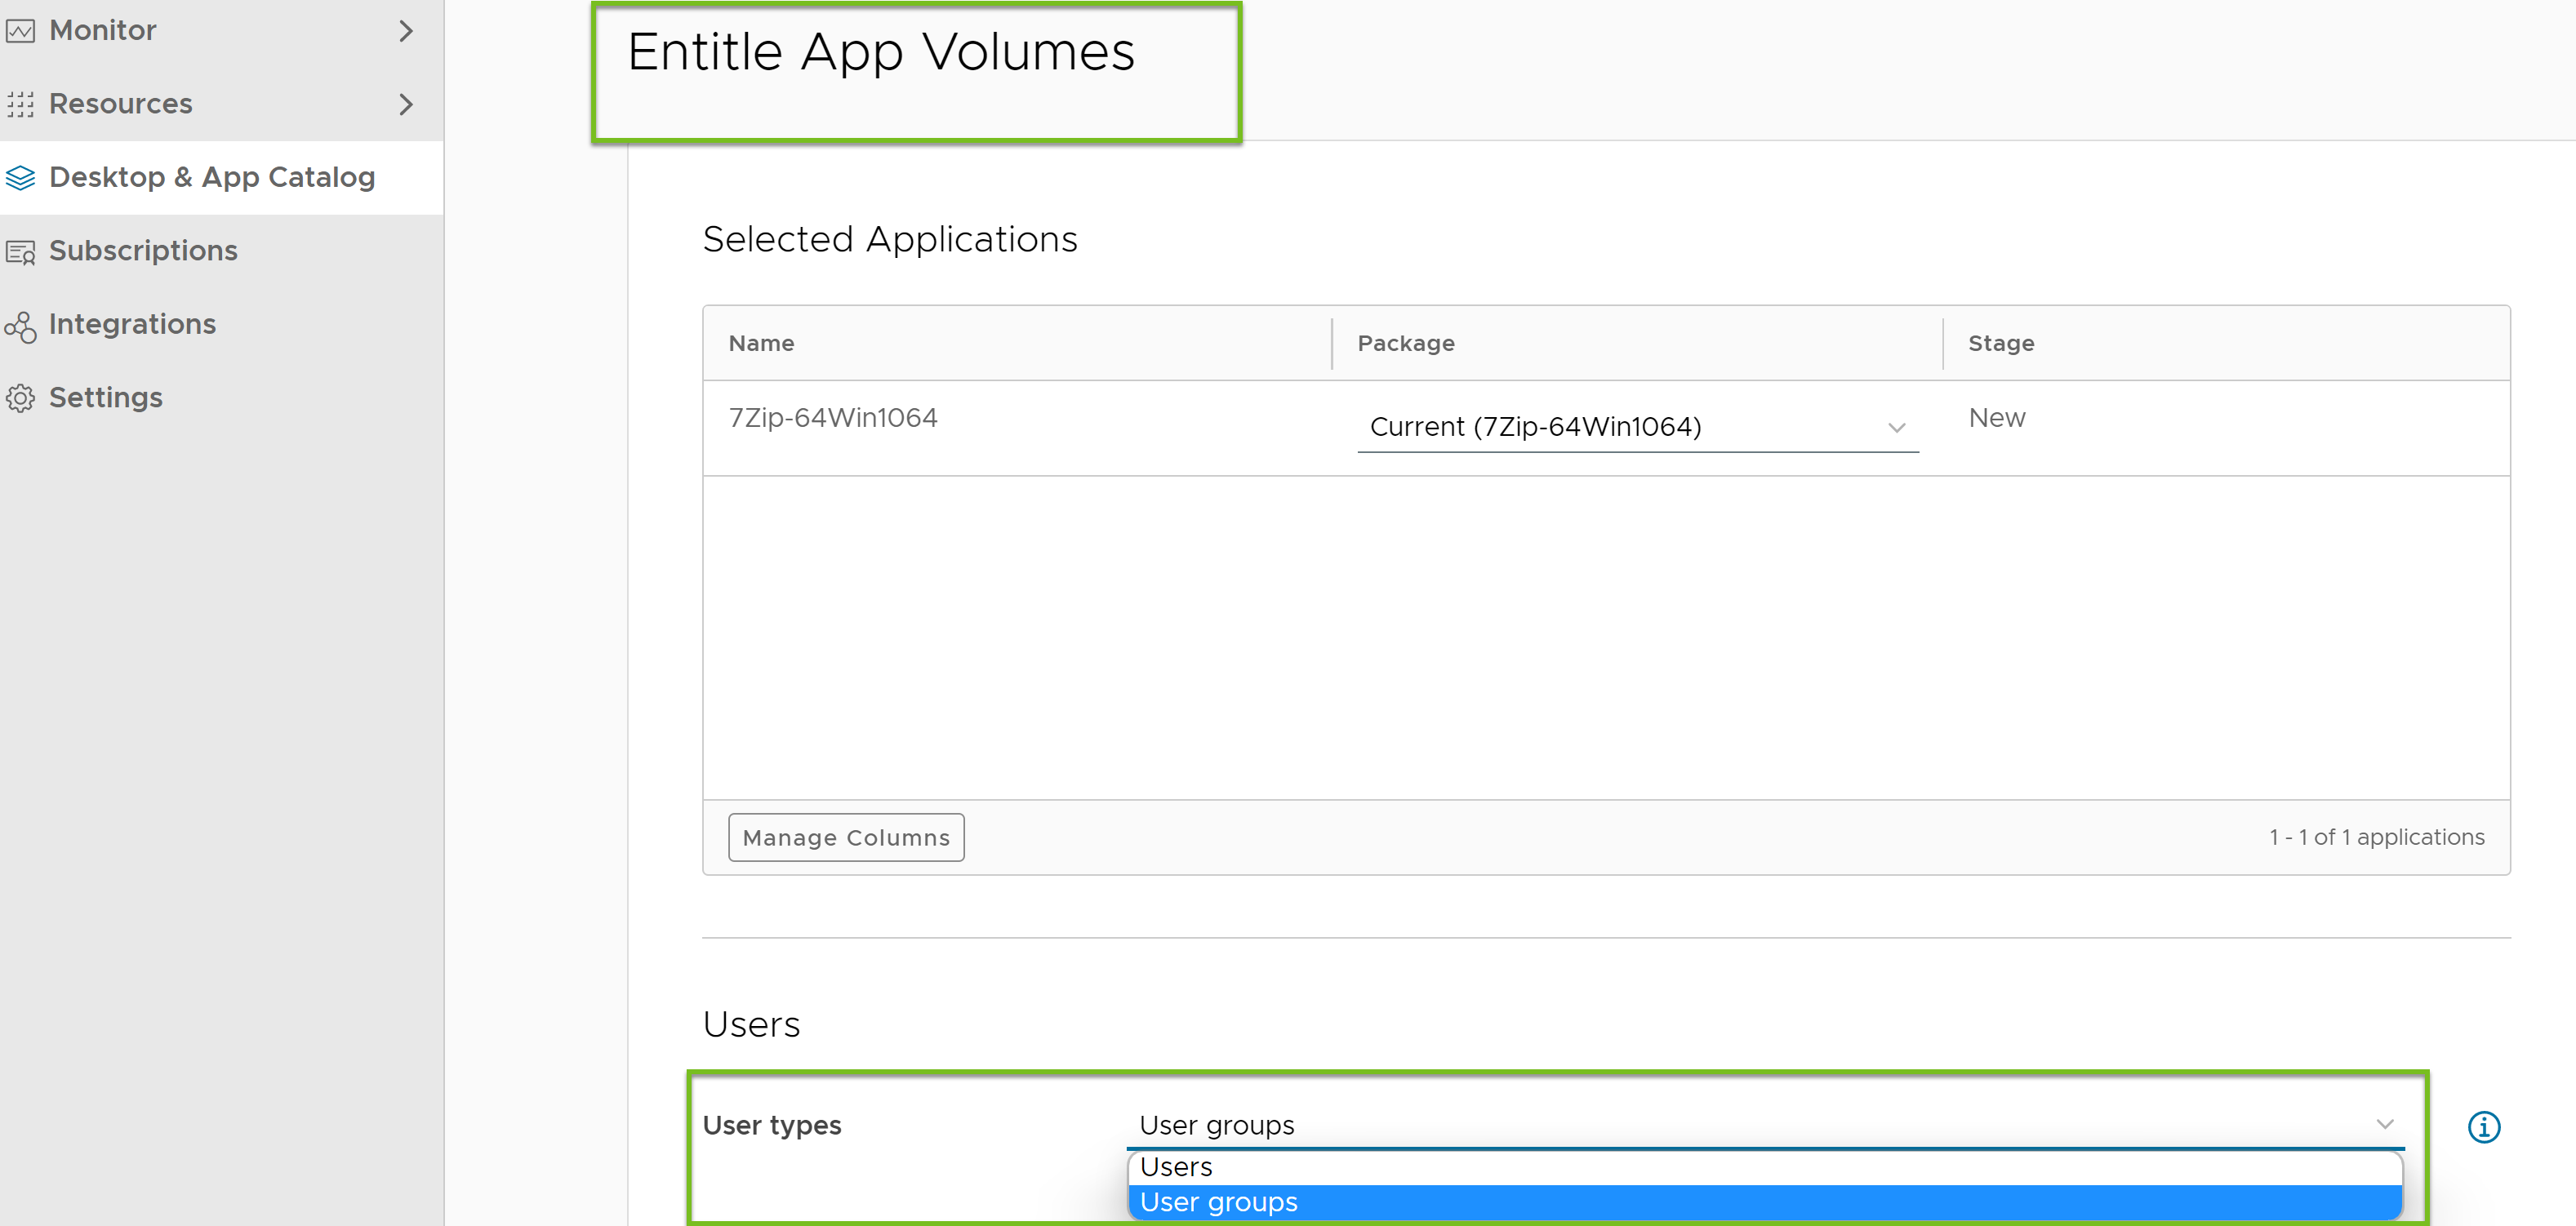 Autorizar una aplicación de App Volumes a uno de estos tipos de usuario: Usuarios o Grupos de usuarios.